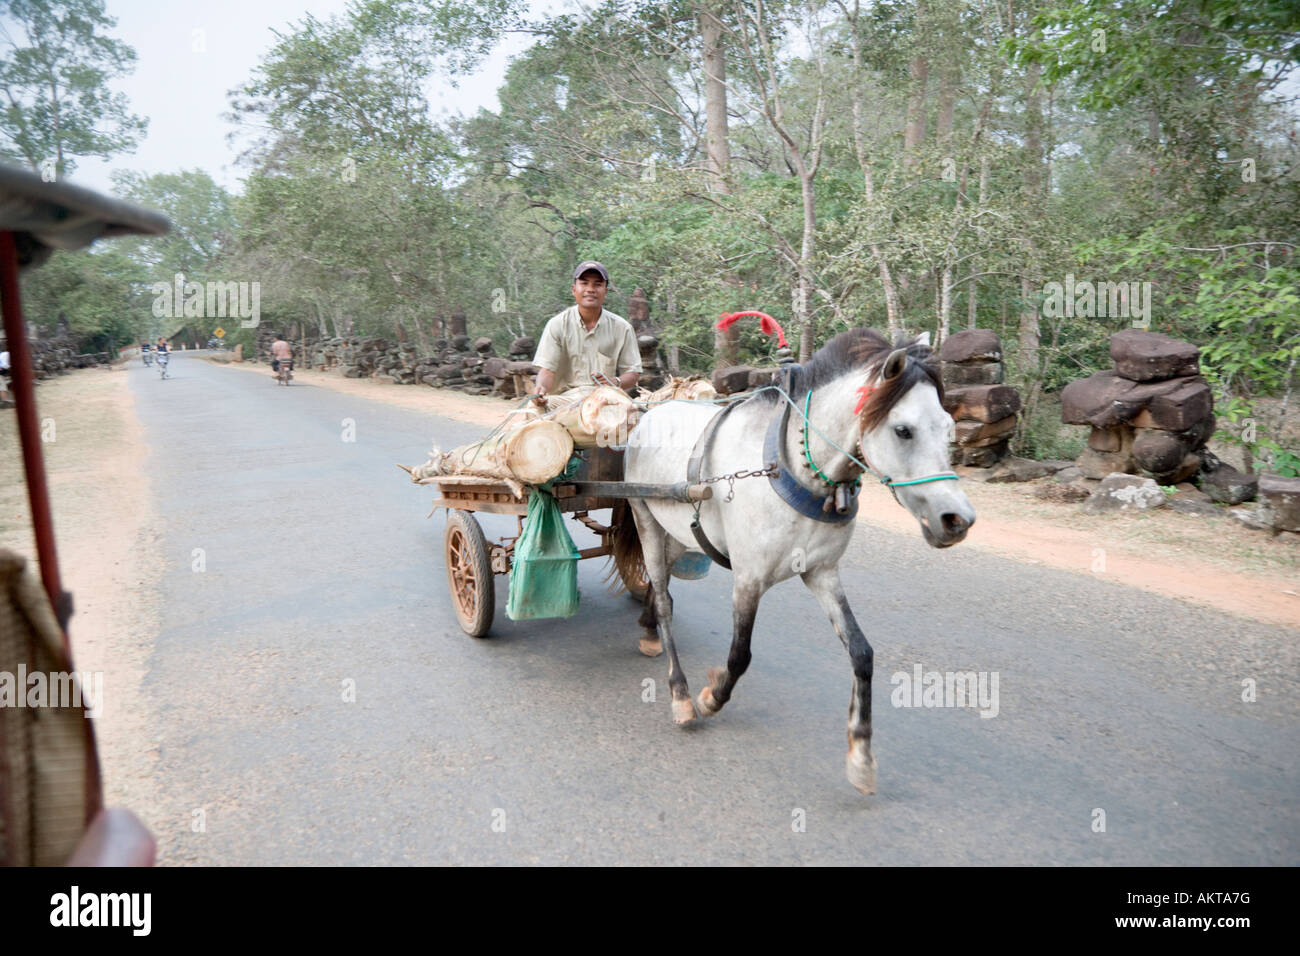 A hard working pony transports banana trunks for feed, Angkor, Cambodia Stock Photo